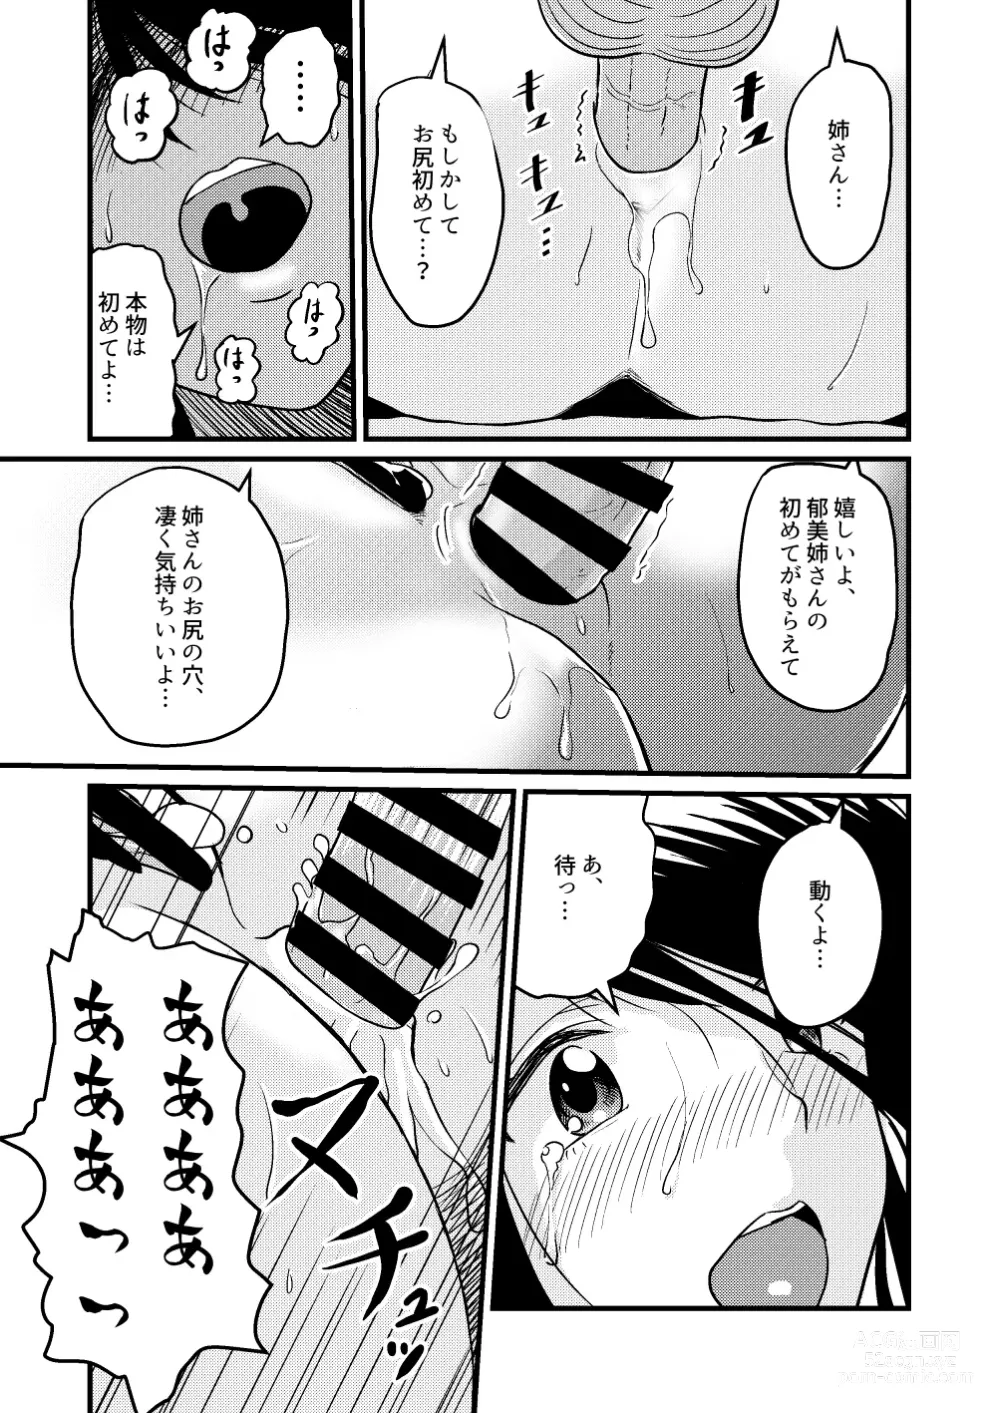 Page 29 of doujinshi Shin Kazoku 2 Ima wa Sensei nante Yobanaide...